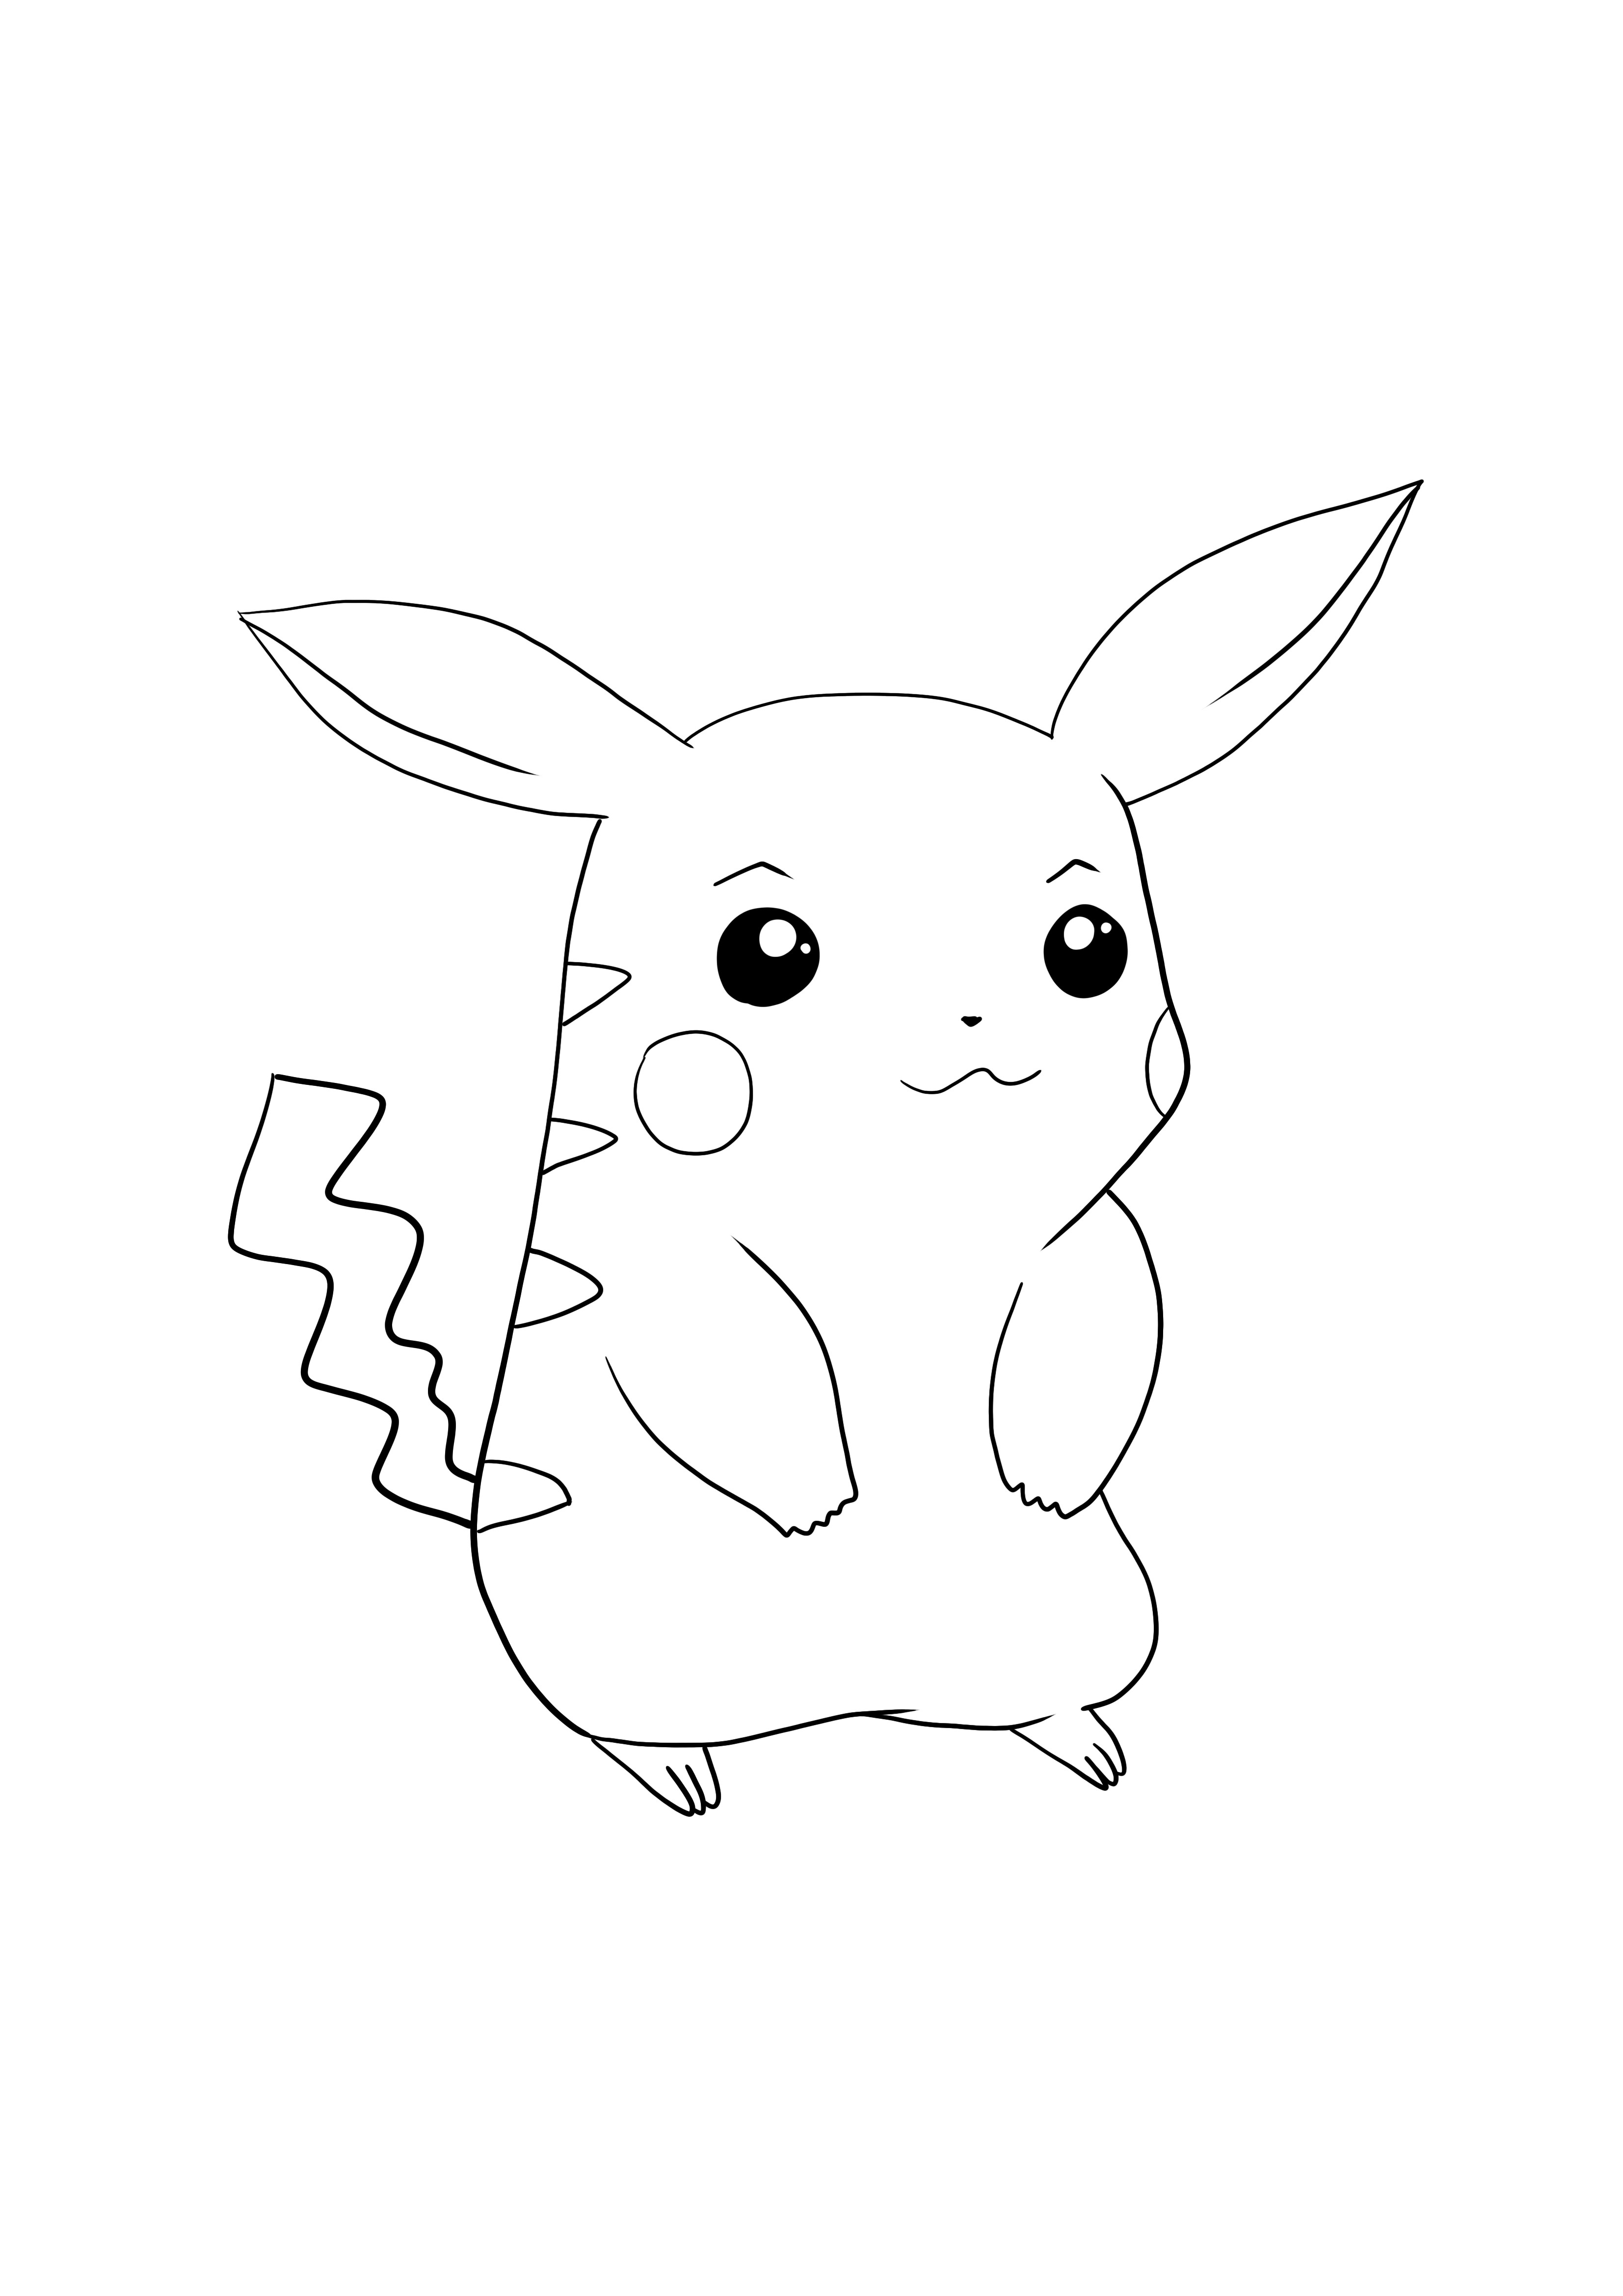 Pikachu-Pokémon git indir ve ücretsiz sayfa renklendir